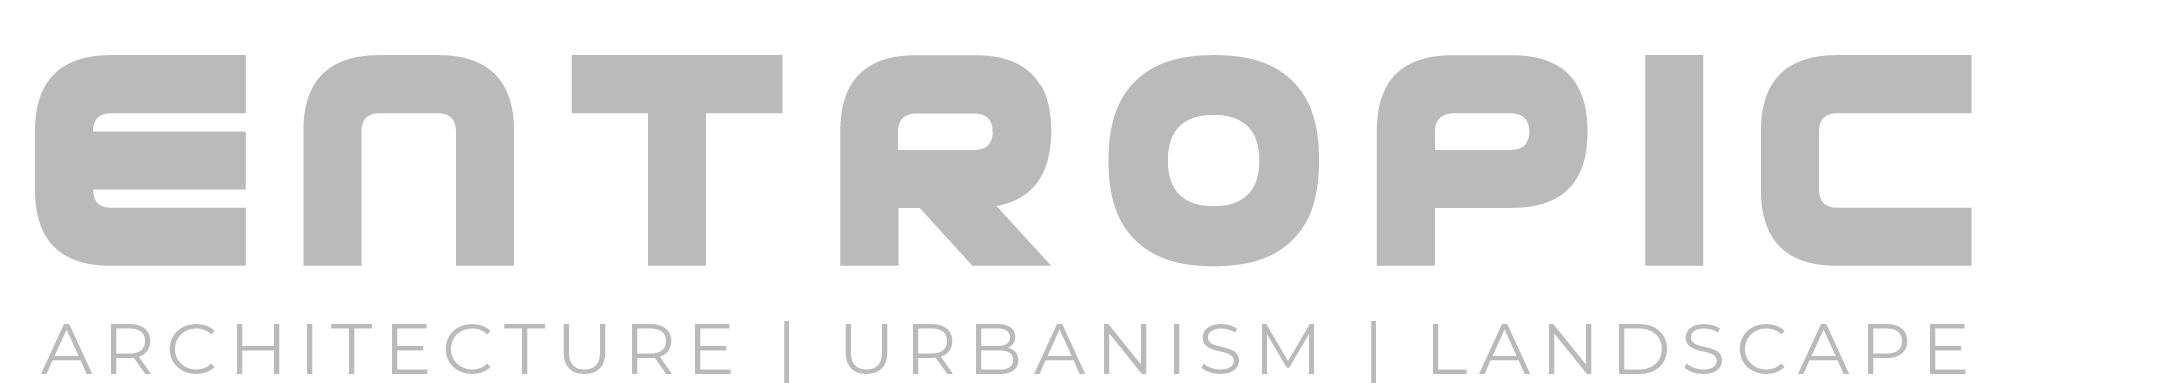 Entropic logo